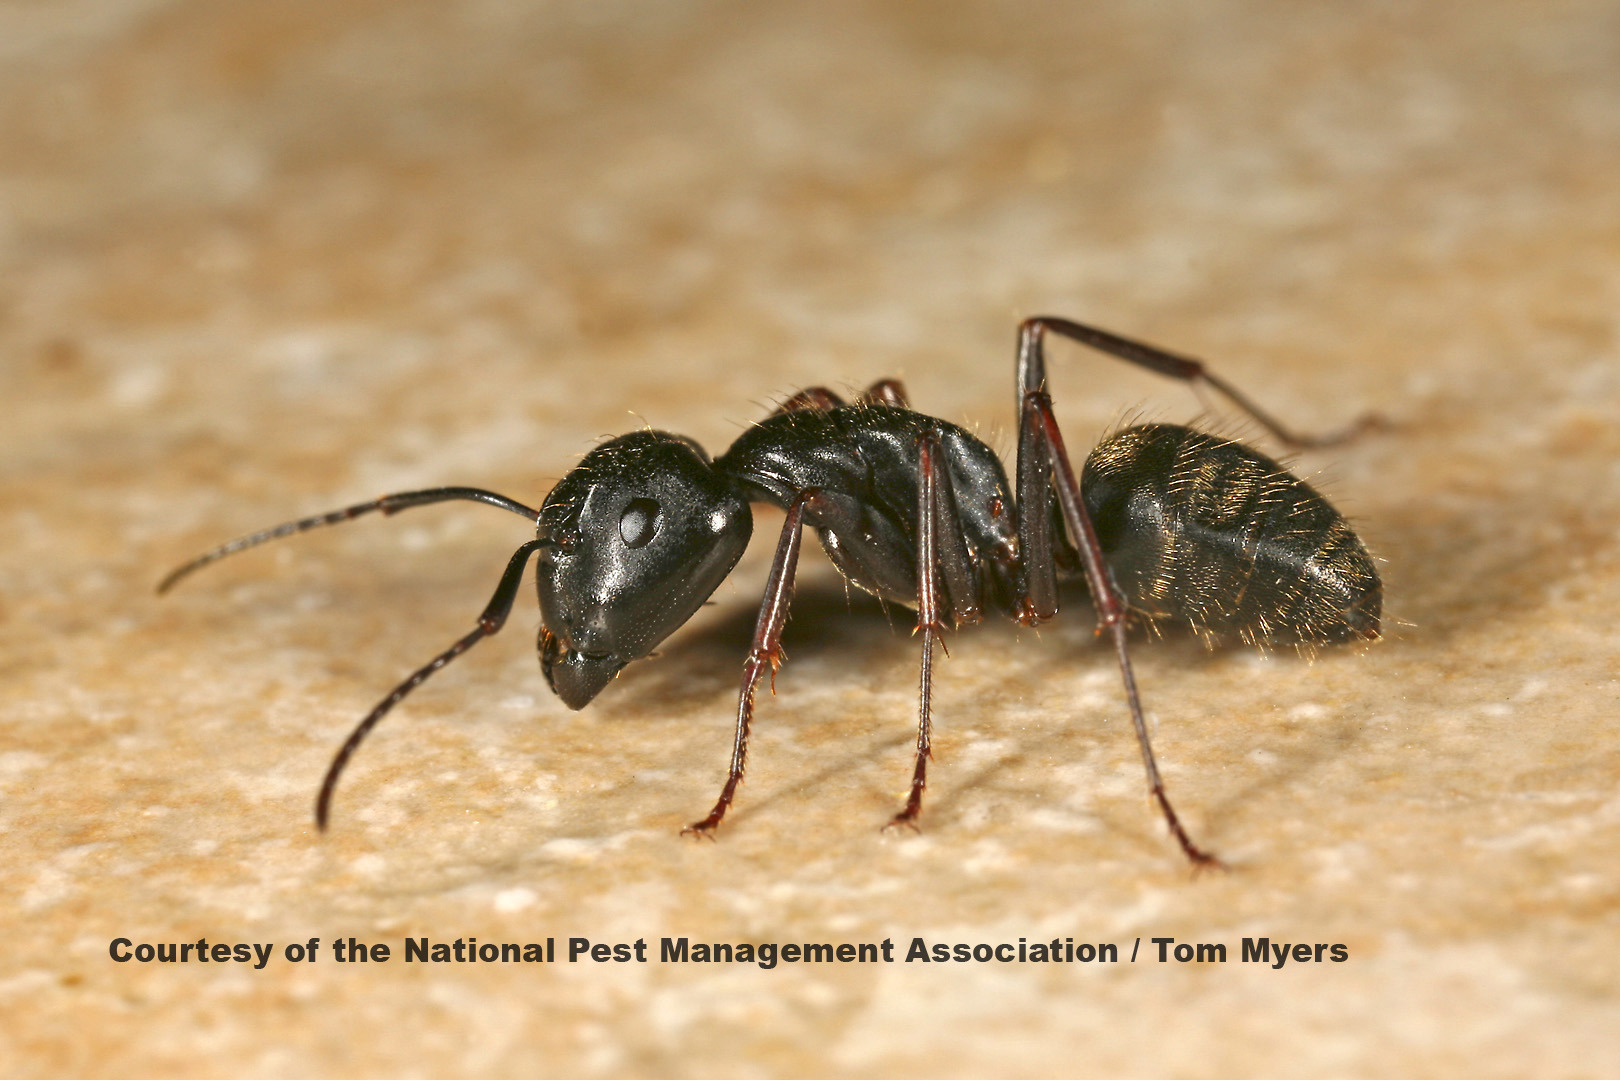 https://www.pestworld.org/media/560617/ants-carpenter-ants.jpg?width=1620&height=1080&v=1d9ba6b4625f520